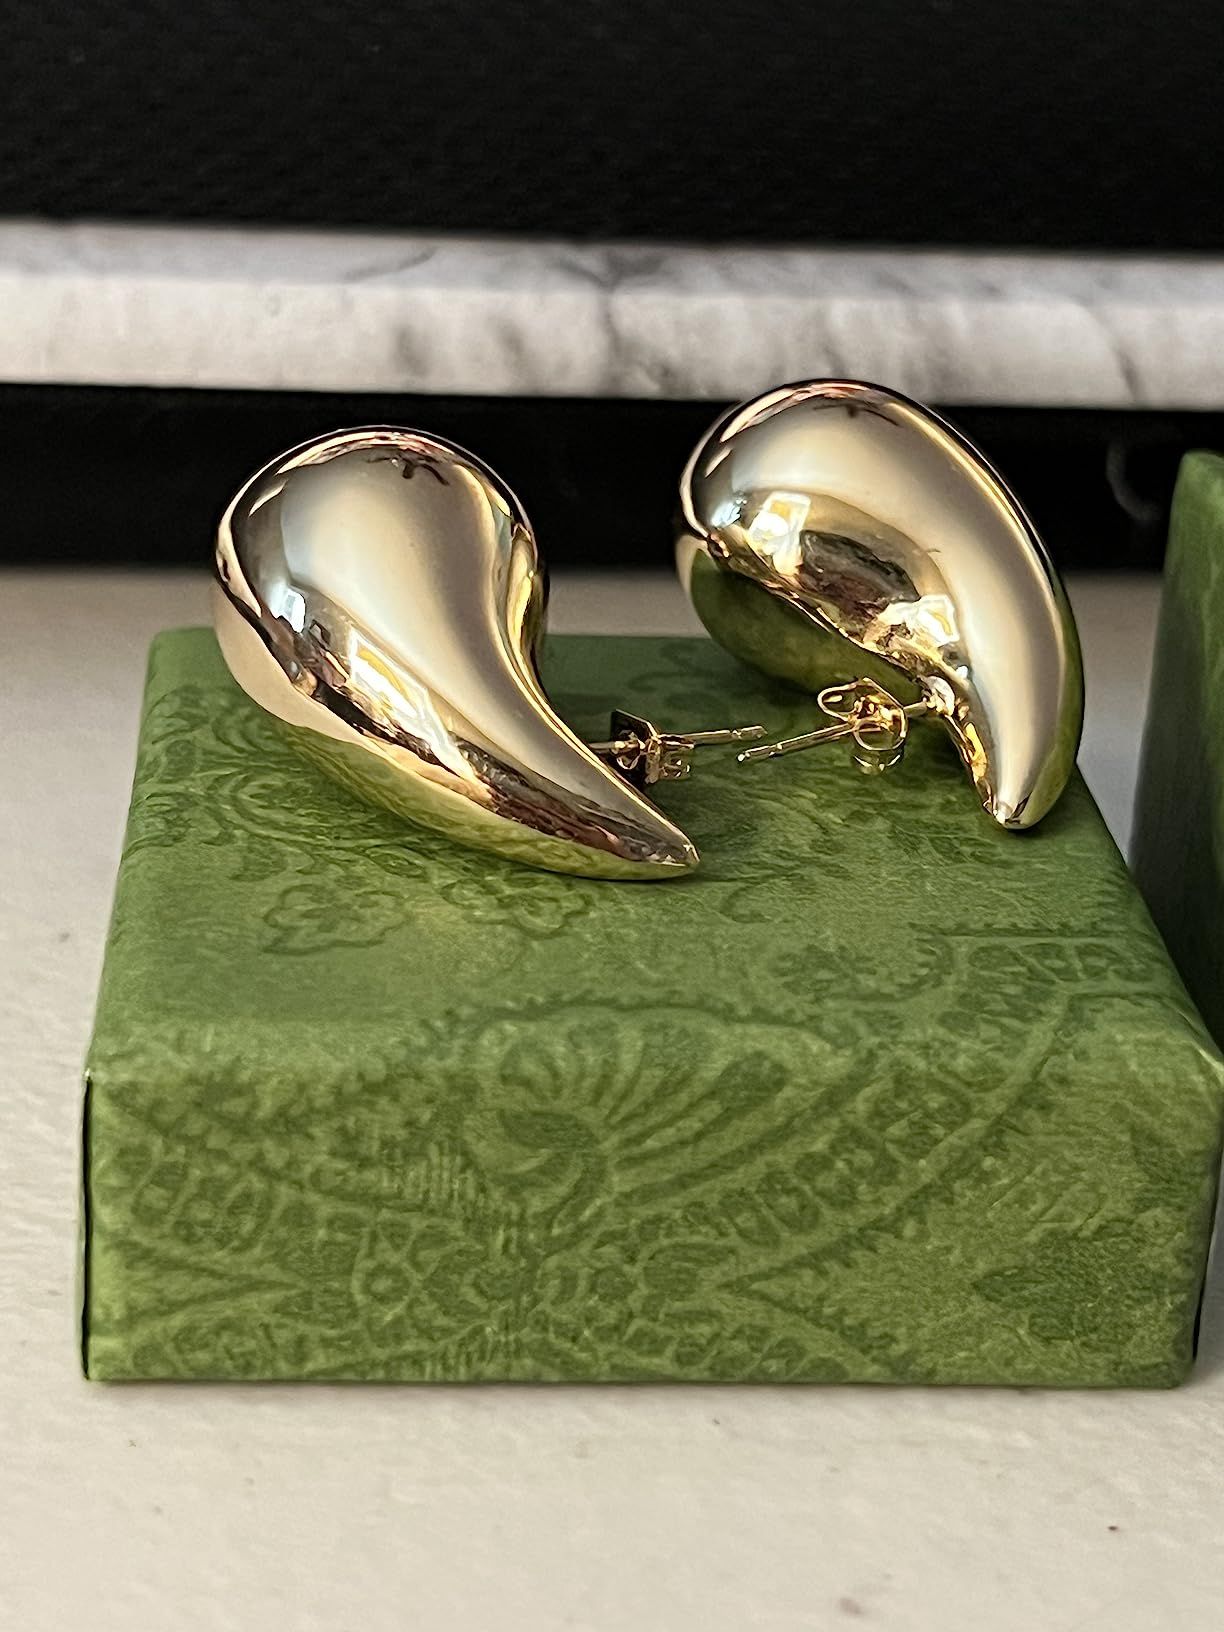 Apsvo Chunky Gold Hoop Earrings for Women, Dupes Earrings Lightweight Waterdrop Hollow Open Hoops... | Amazon (US)